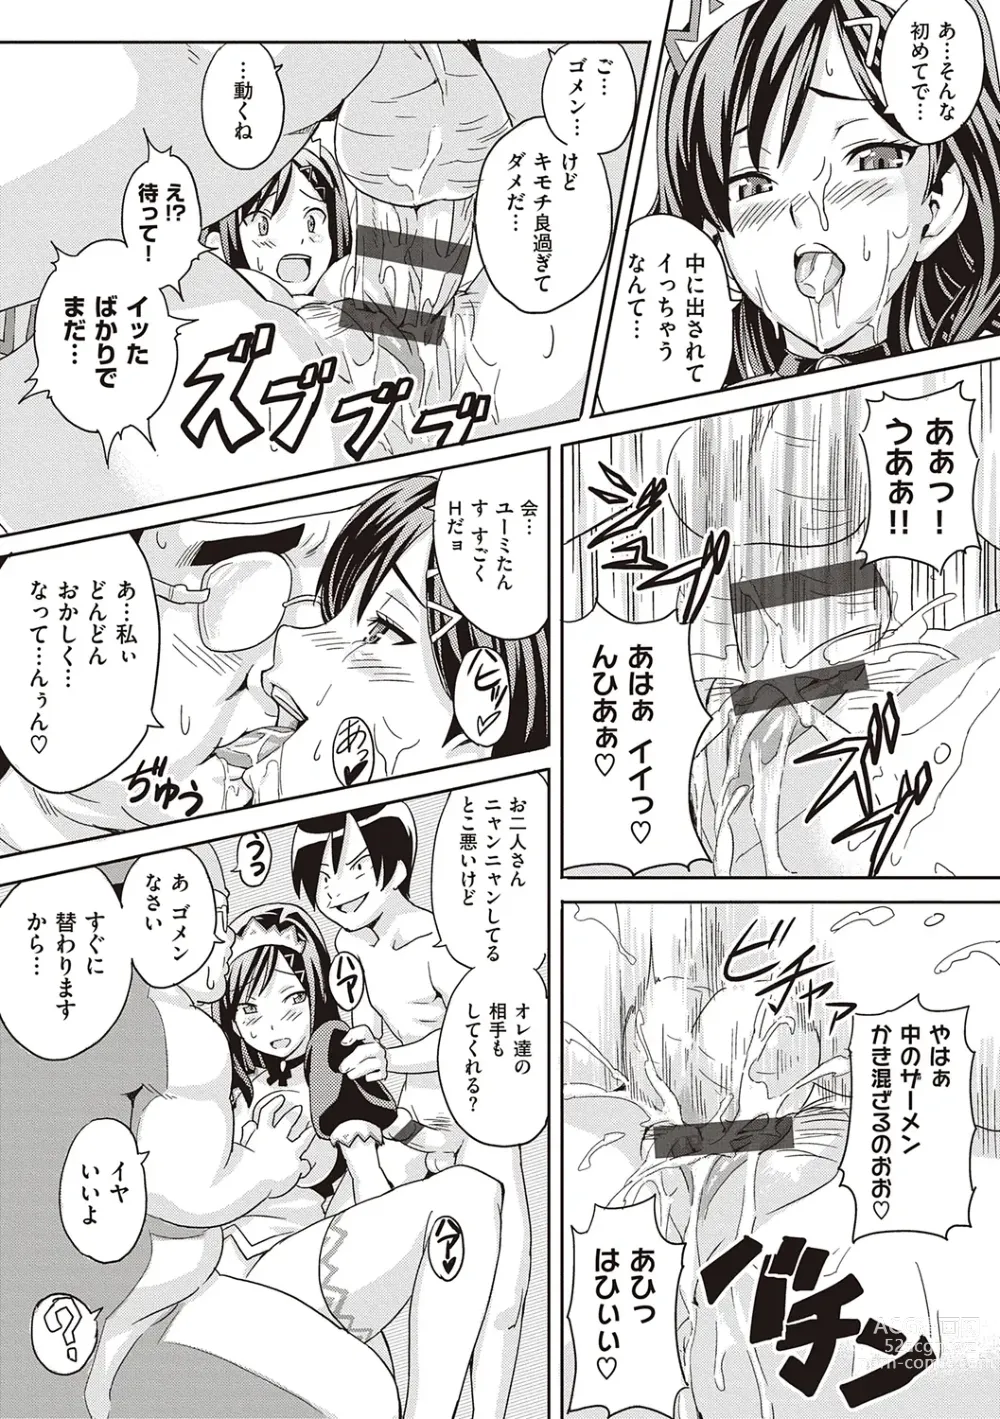 Page 231 of manga Tsundero Shinsouban